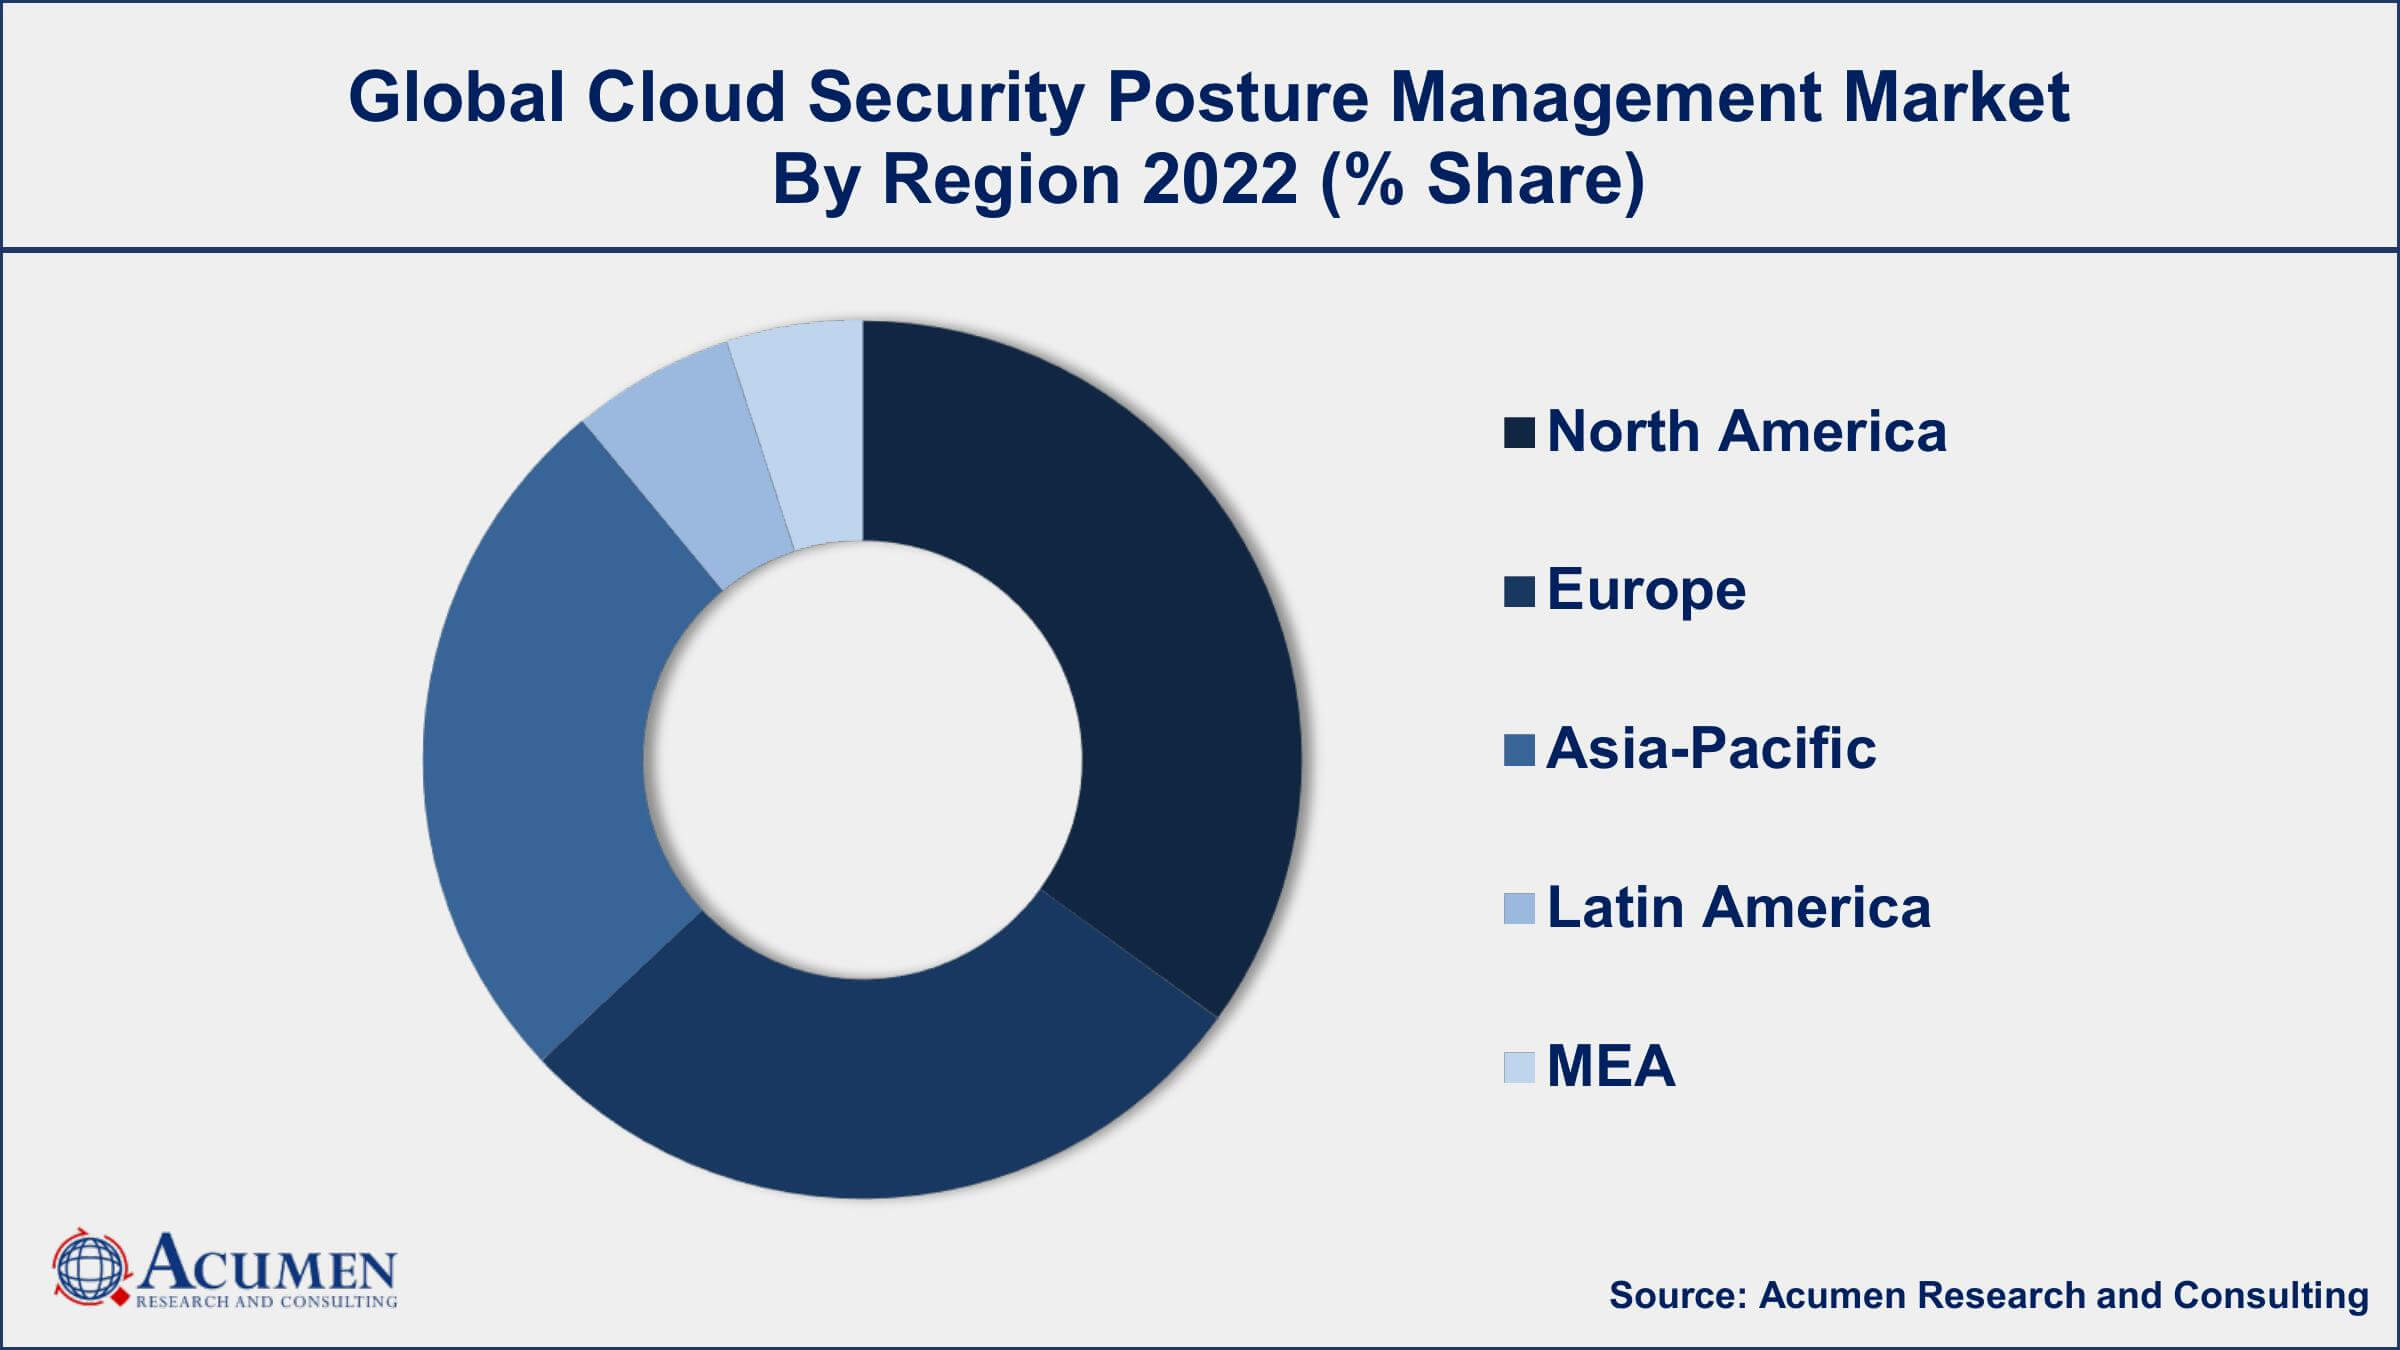 Cloud Security Posture Management Market Drivers